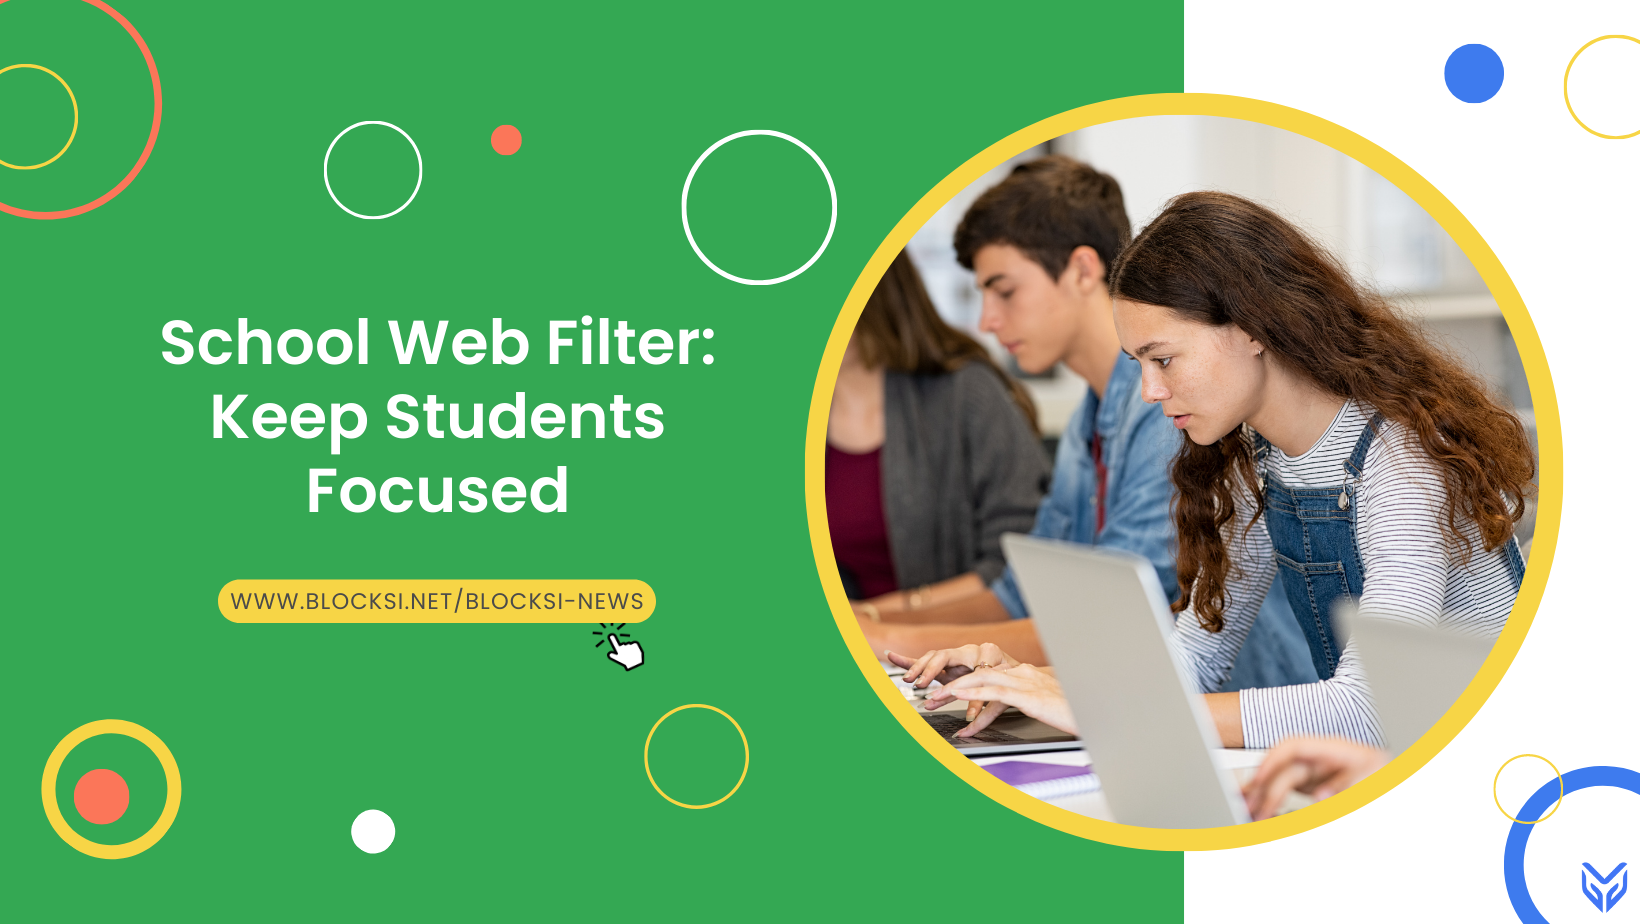 School Web Filter: Keep Students Focused